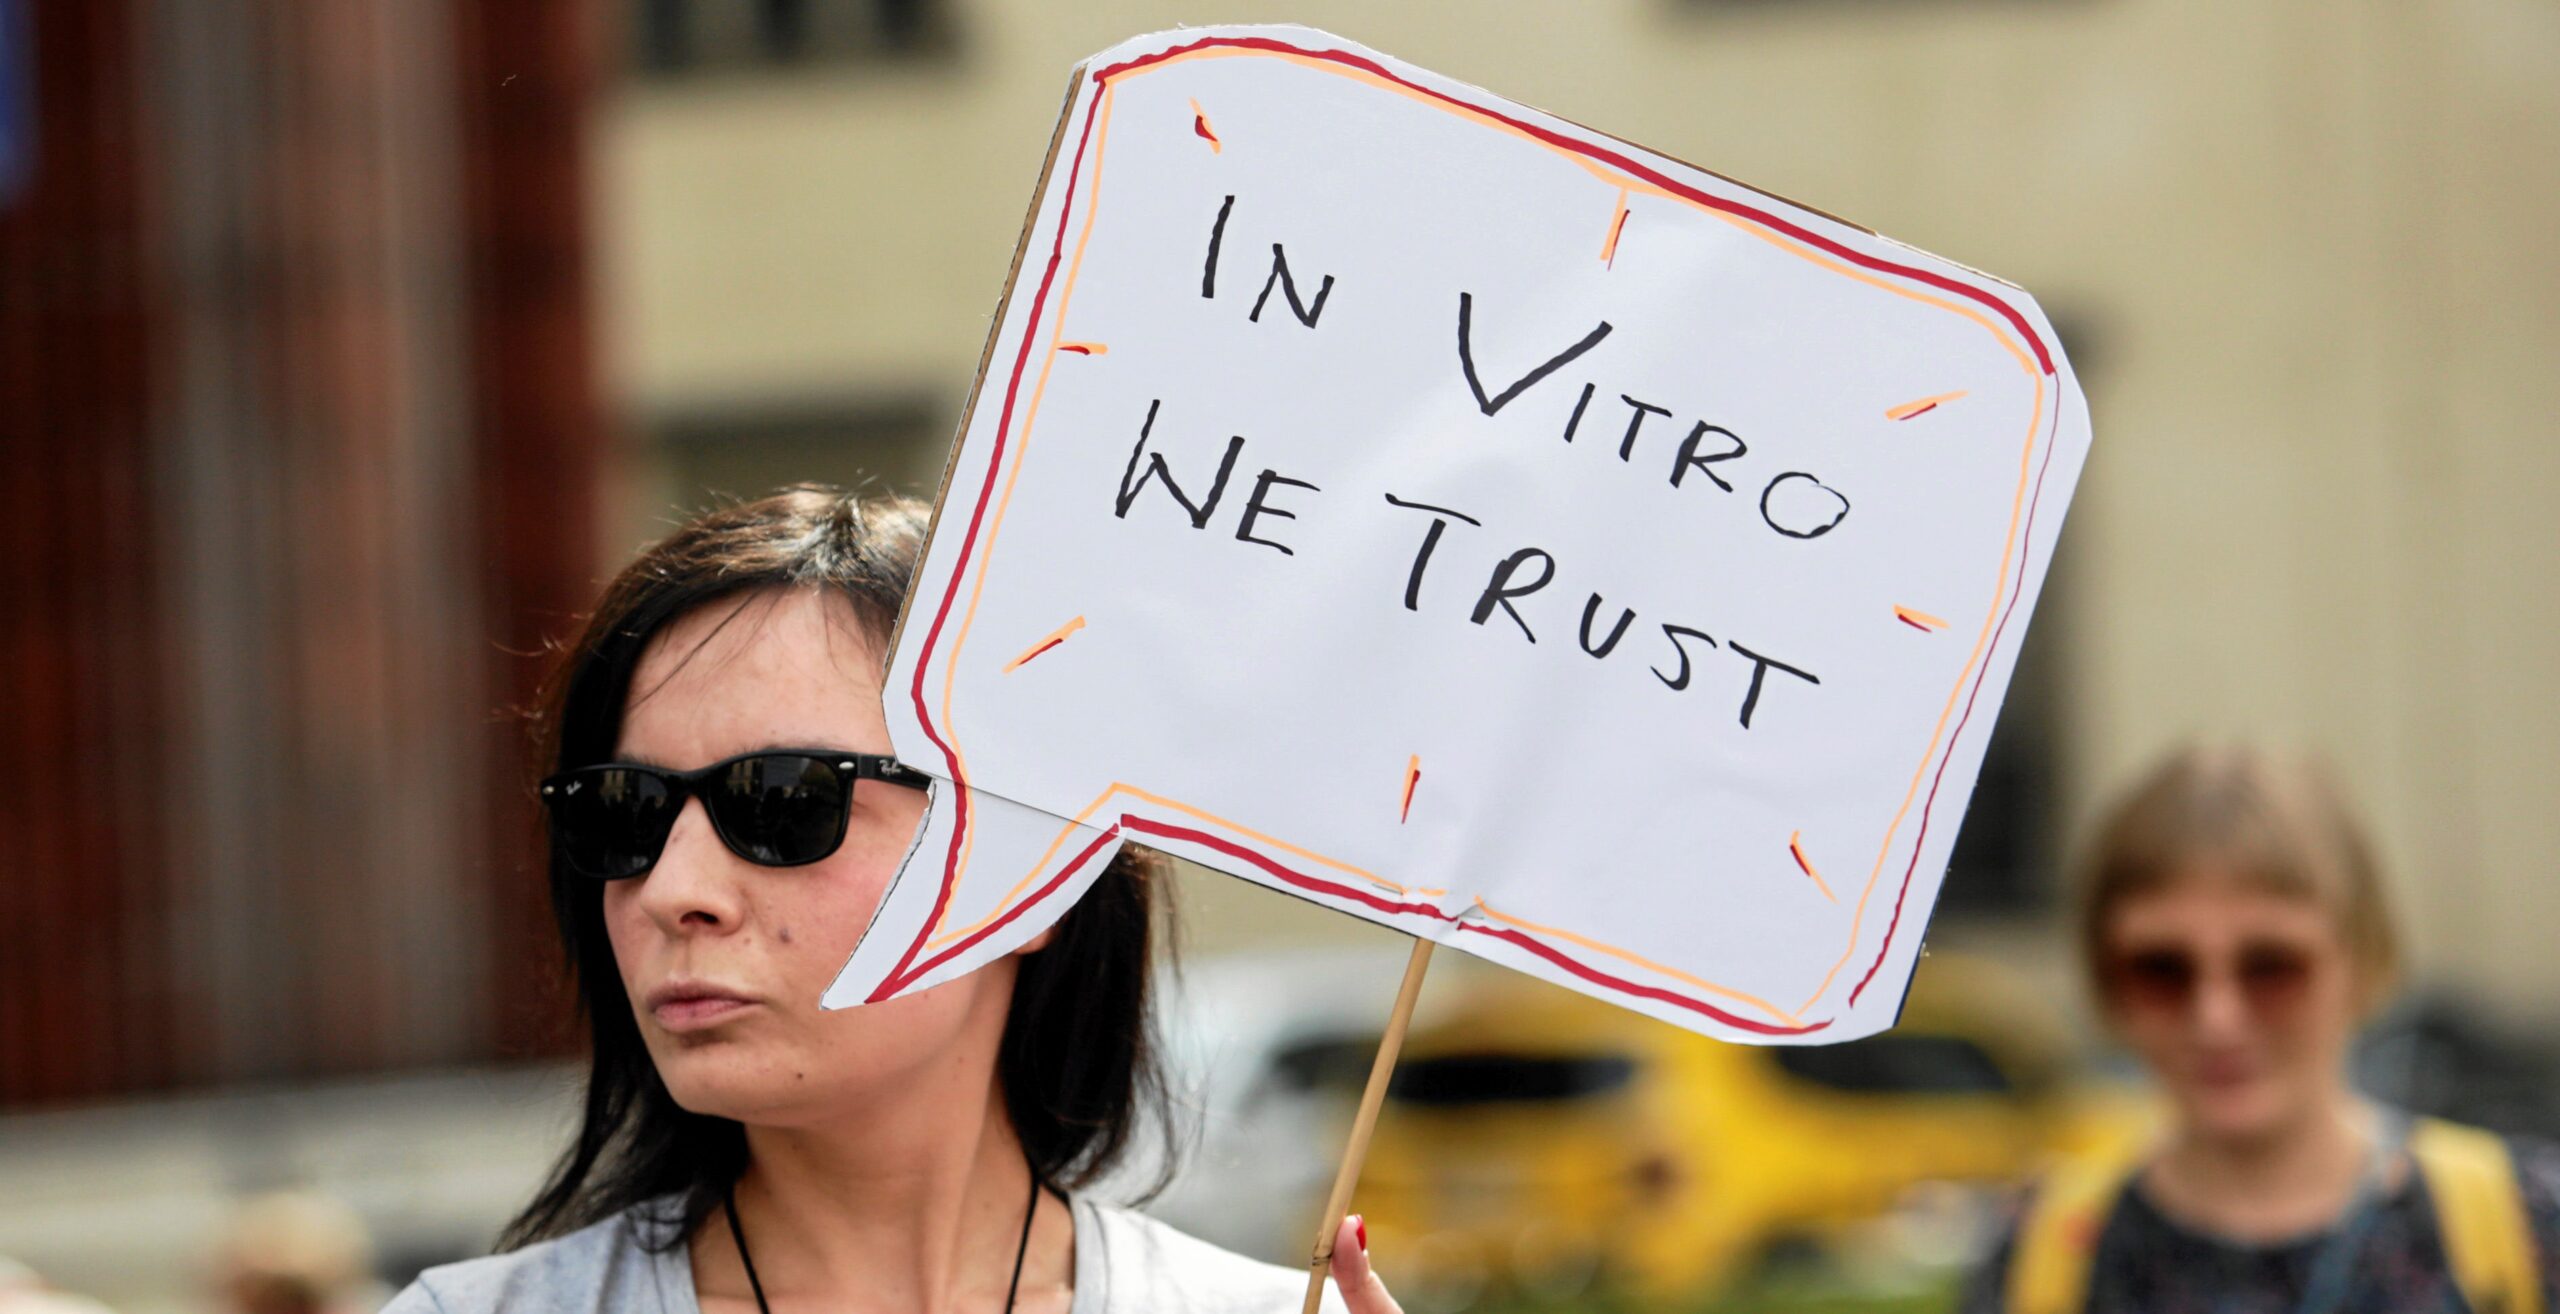 Polska opozycja próbuje przywrócić państwowe finansowanie in vitro